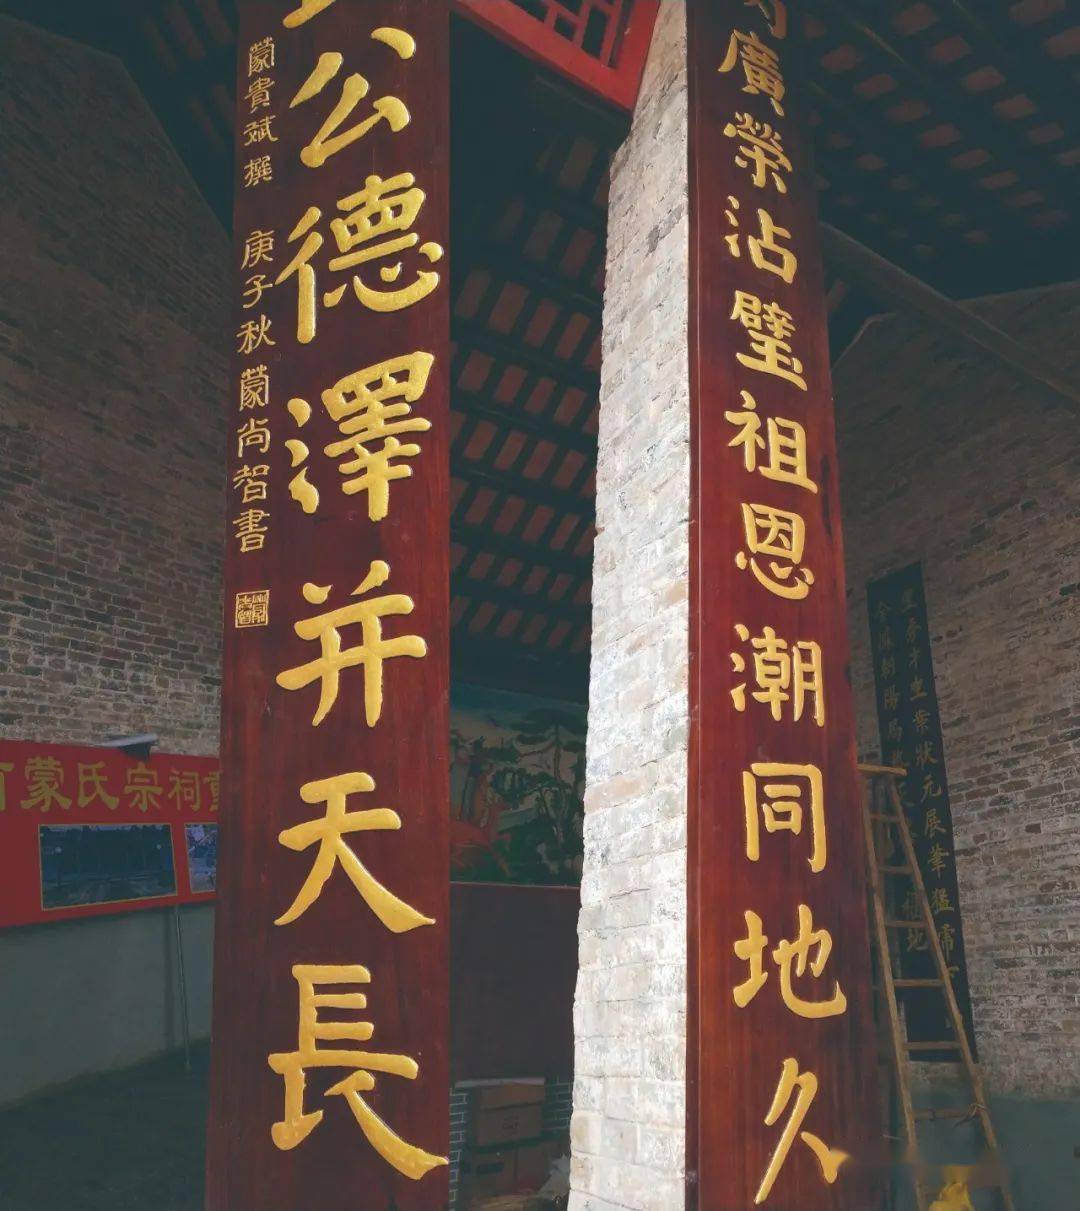 蒙恬书画院为正宗的中国"国粹"添光增彩, 弘扬笔祖